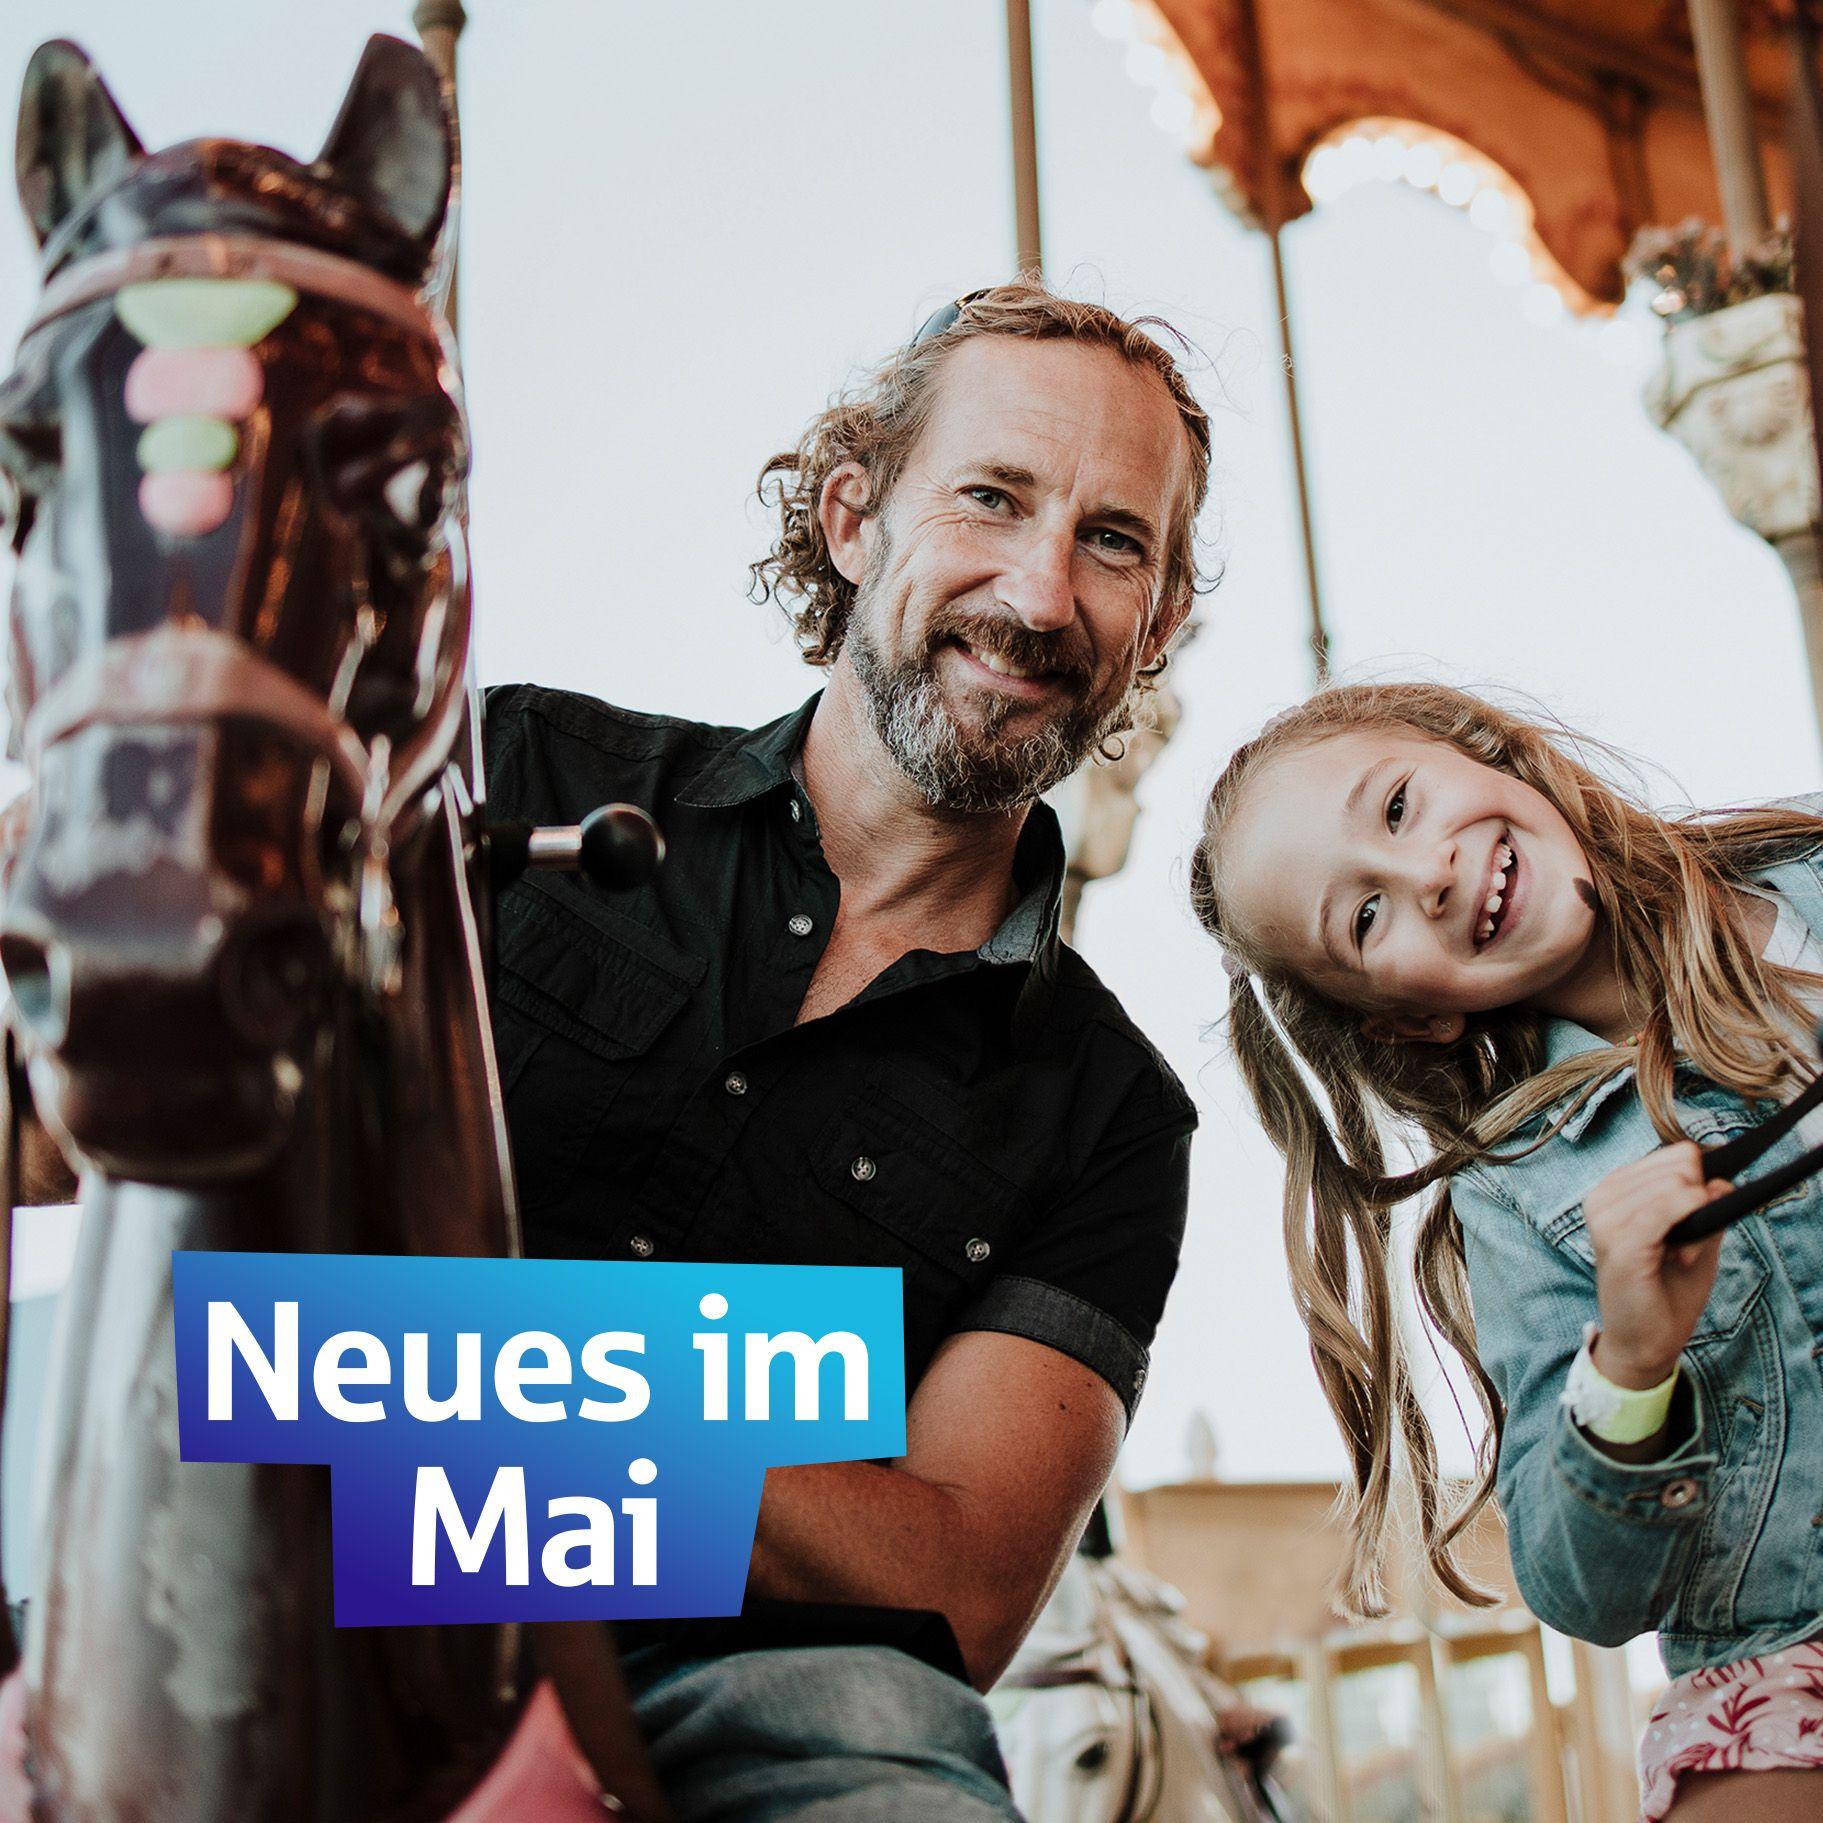 Neues im Mai, ein Mann und ein Kind auf einem Karussell, in weißer Scjrift auf blau steht "Nues im Mai"